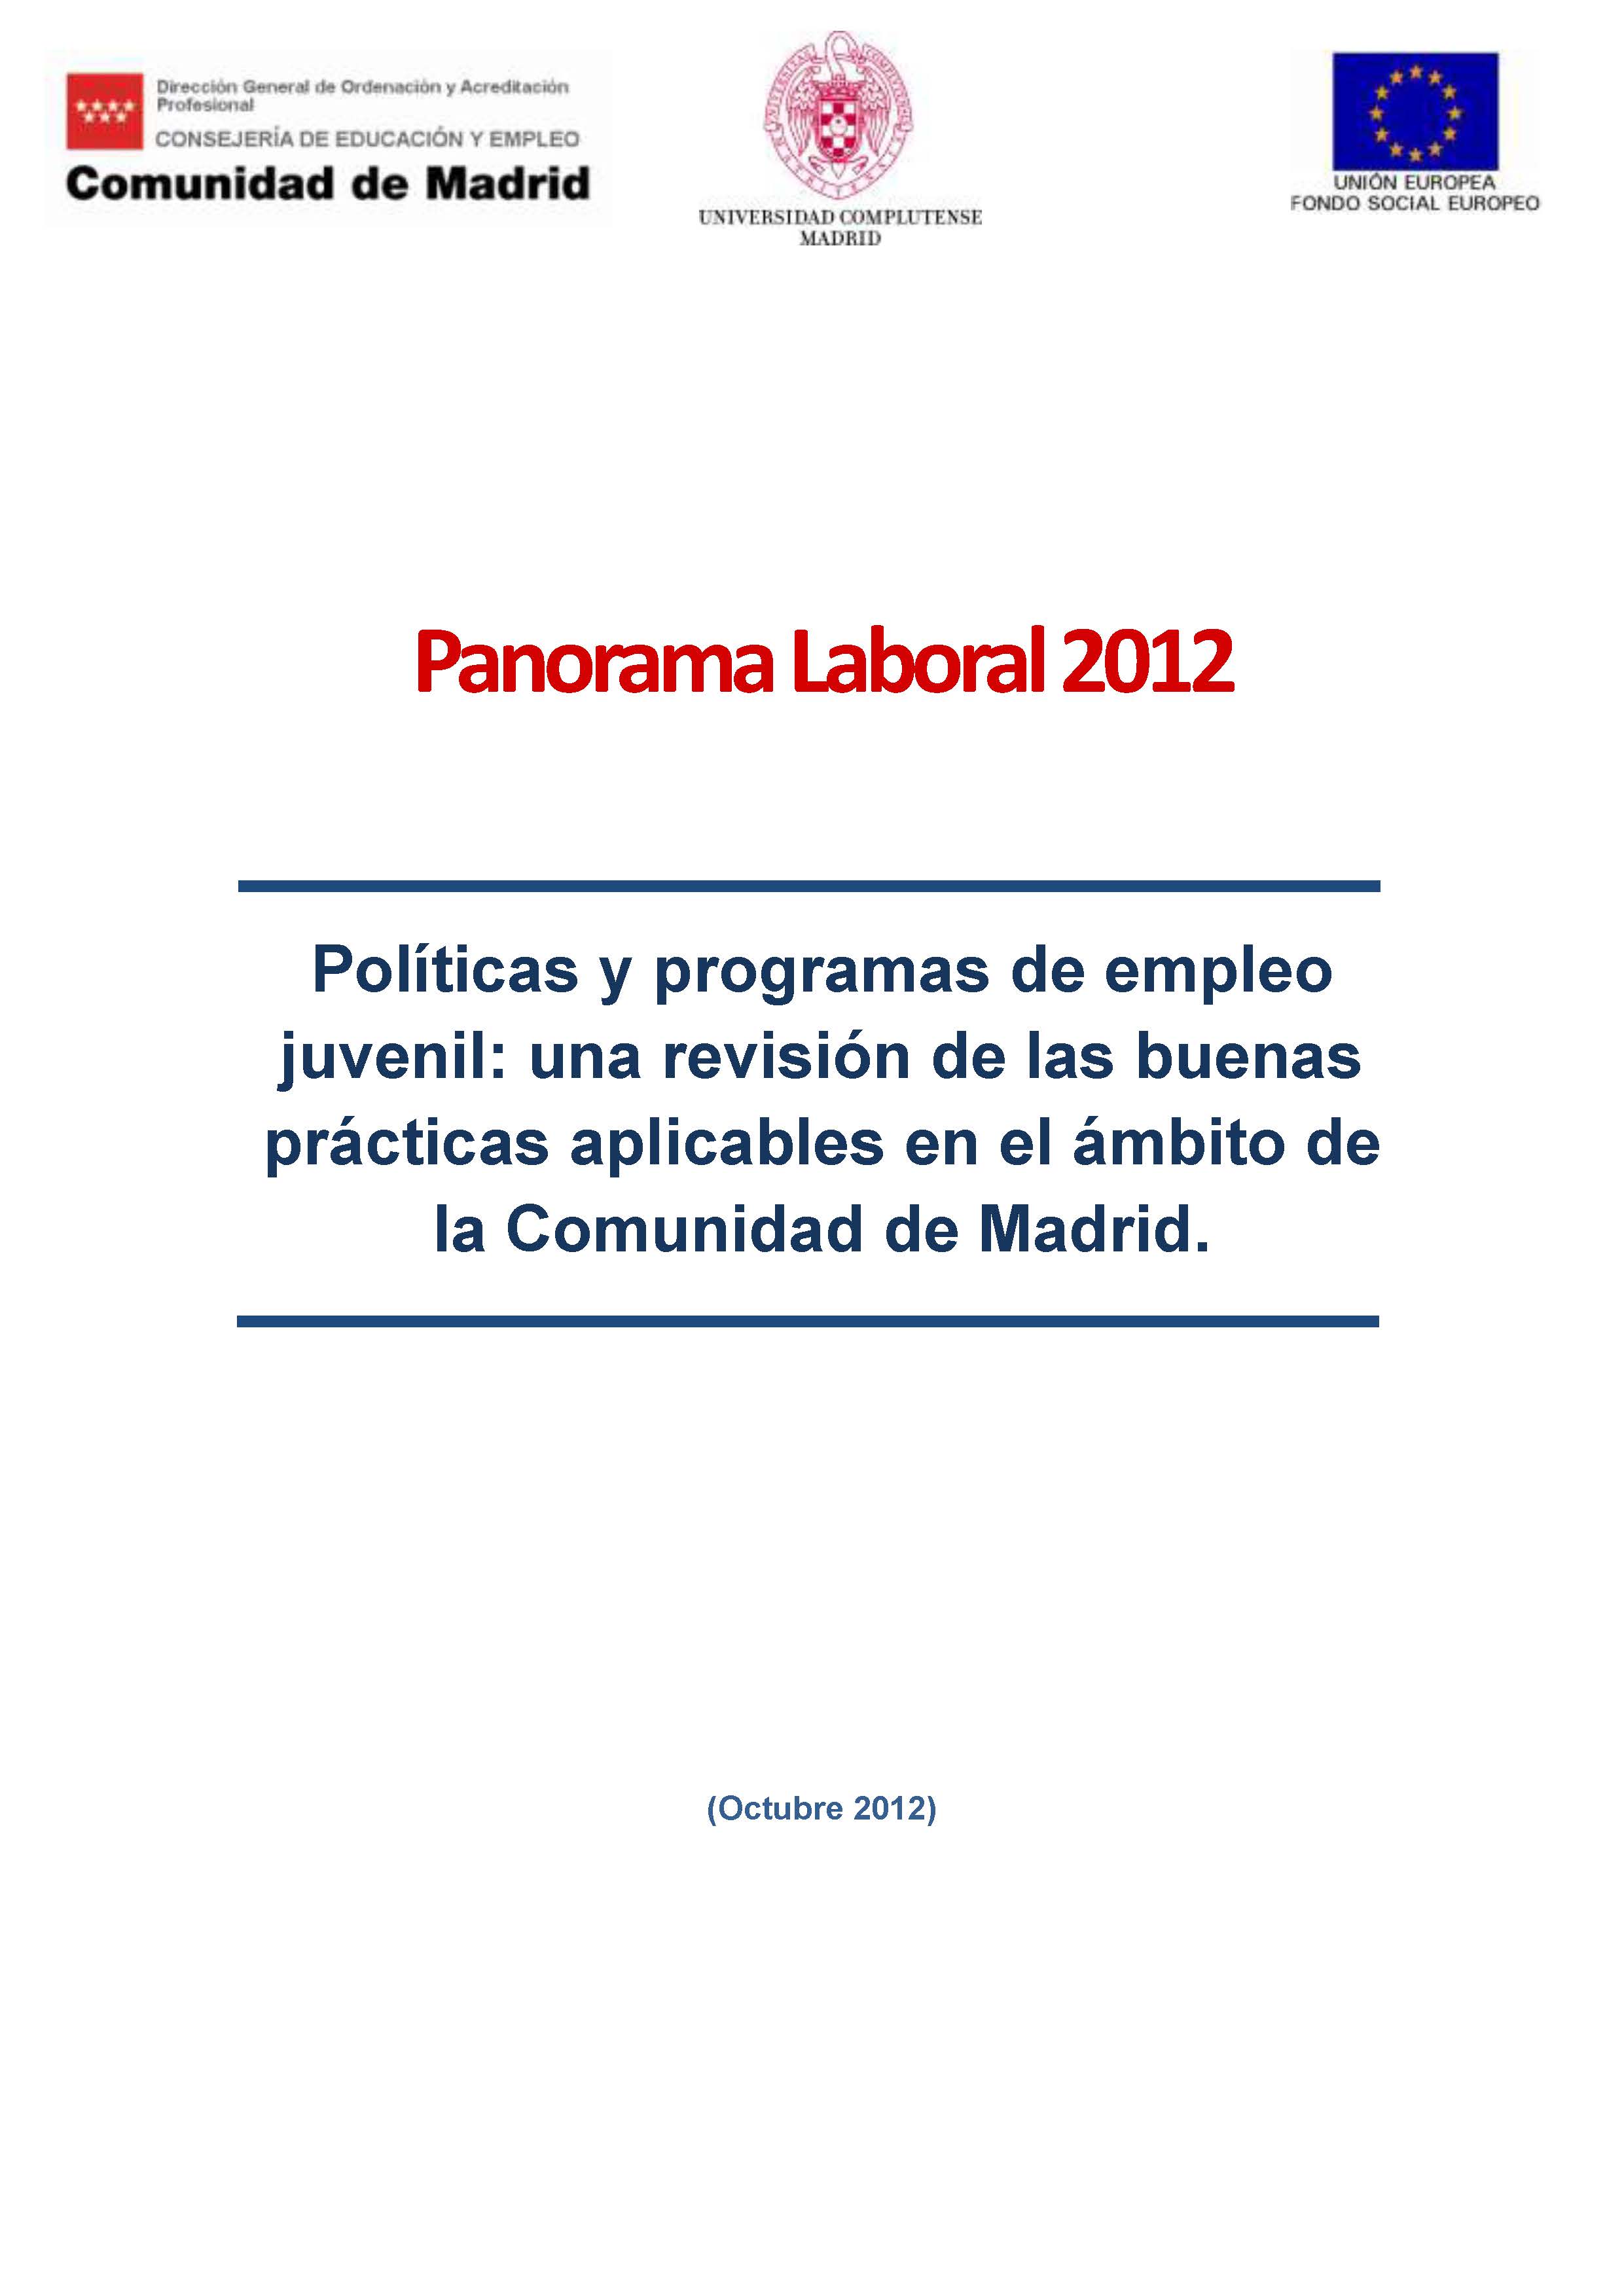 Portada de Panorama Laboral 2012. Políticas y programas de empleo juvenil una revisión de las buenas prácticas aplicables en el ámbito de la Comunidad de Madrid.